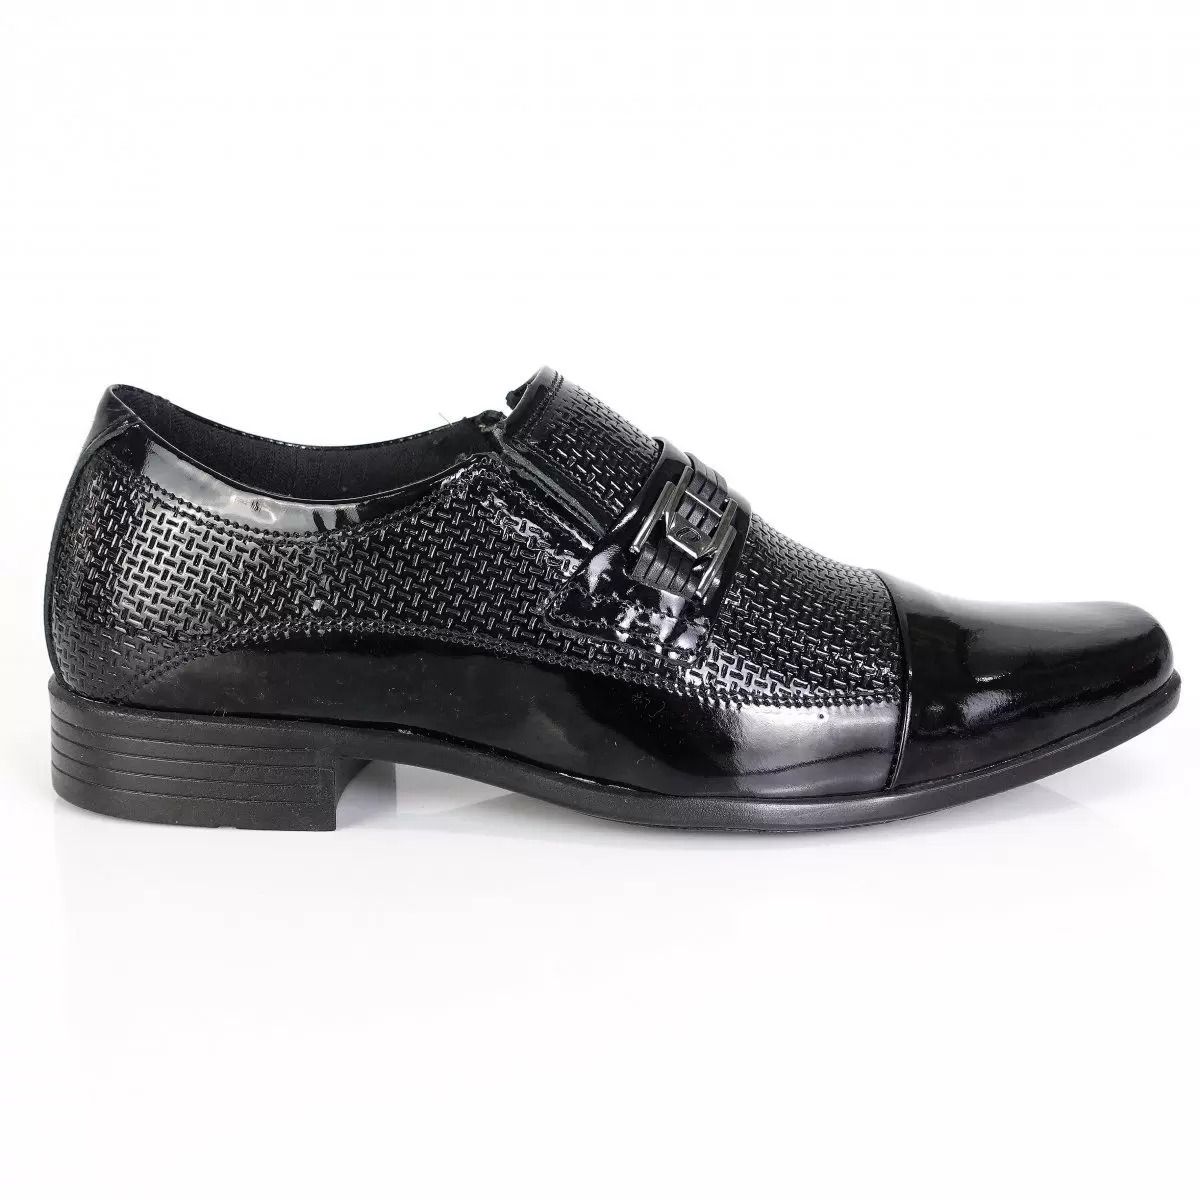 Zapatos Formales Pegada Charol Negro 121842-03